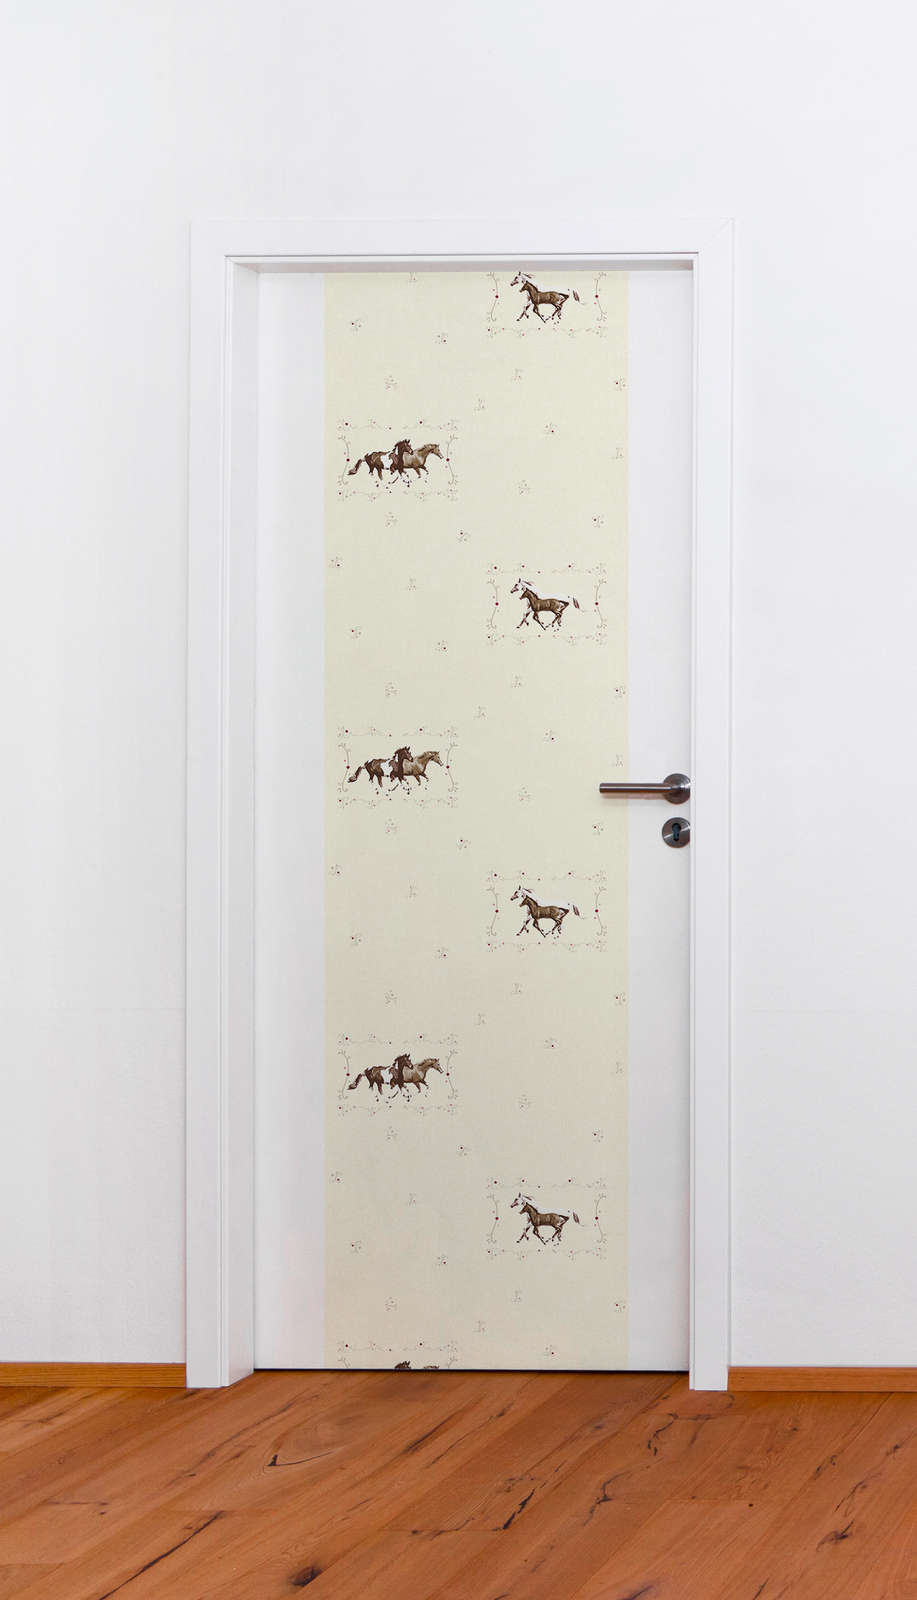             Zelfklevend behangpapier met paardenmotief voor meisjes - beige, bruin, wit
        